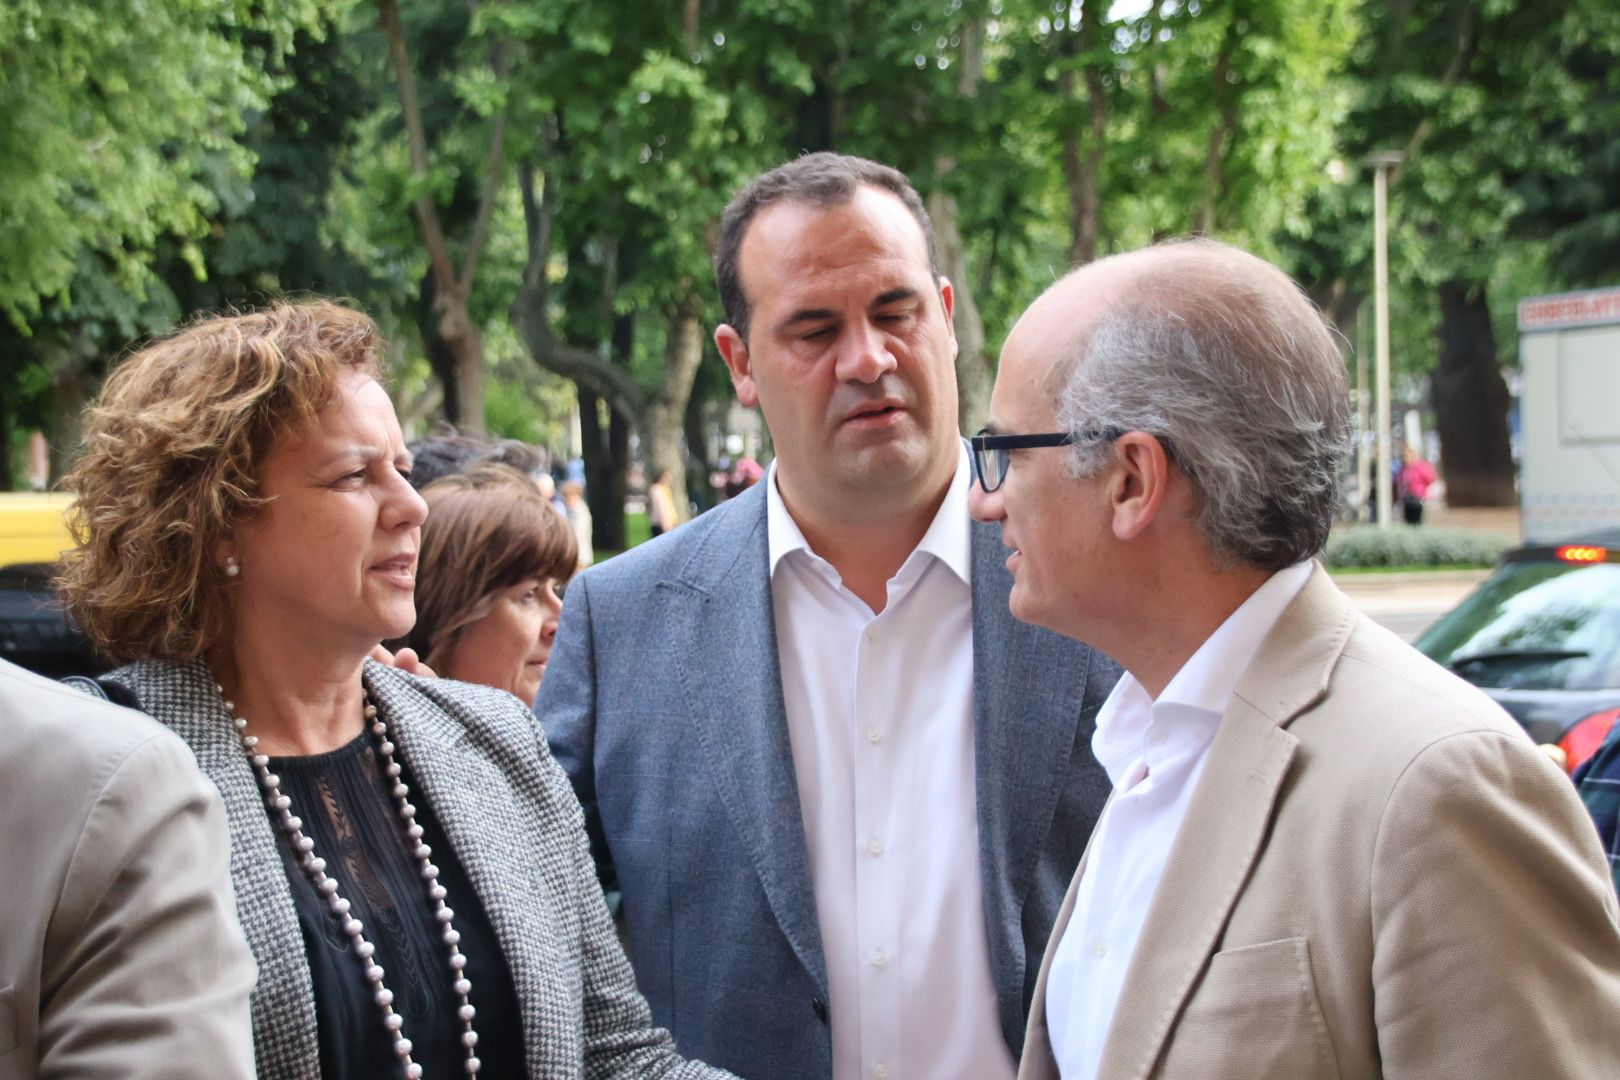 El Partido Popular de Salamanca celebra un acto de fin de campaña con las intervenciones del presidente del Partido Popular de Salamanca y candidato a la alcaldía de la ciudad